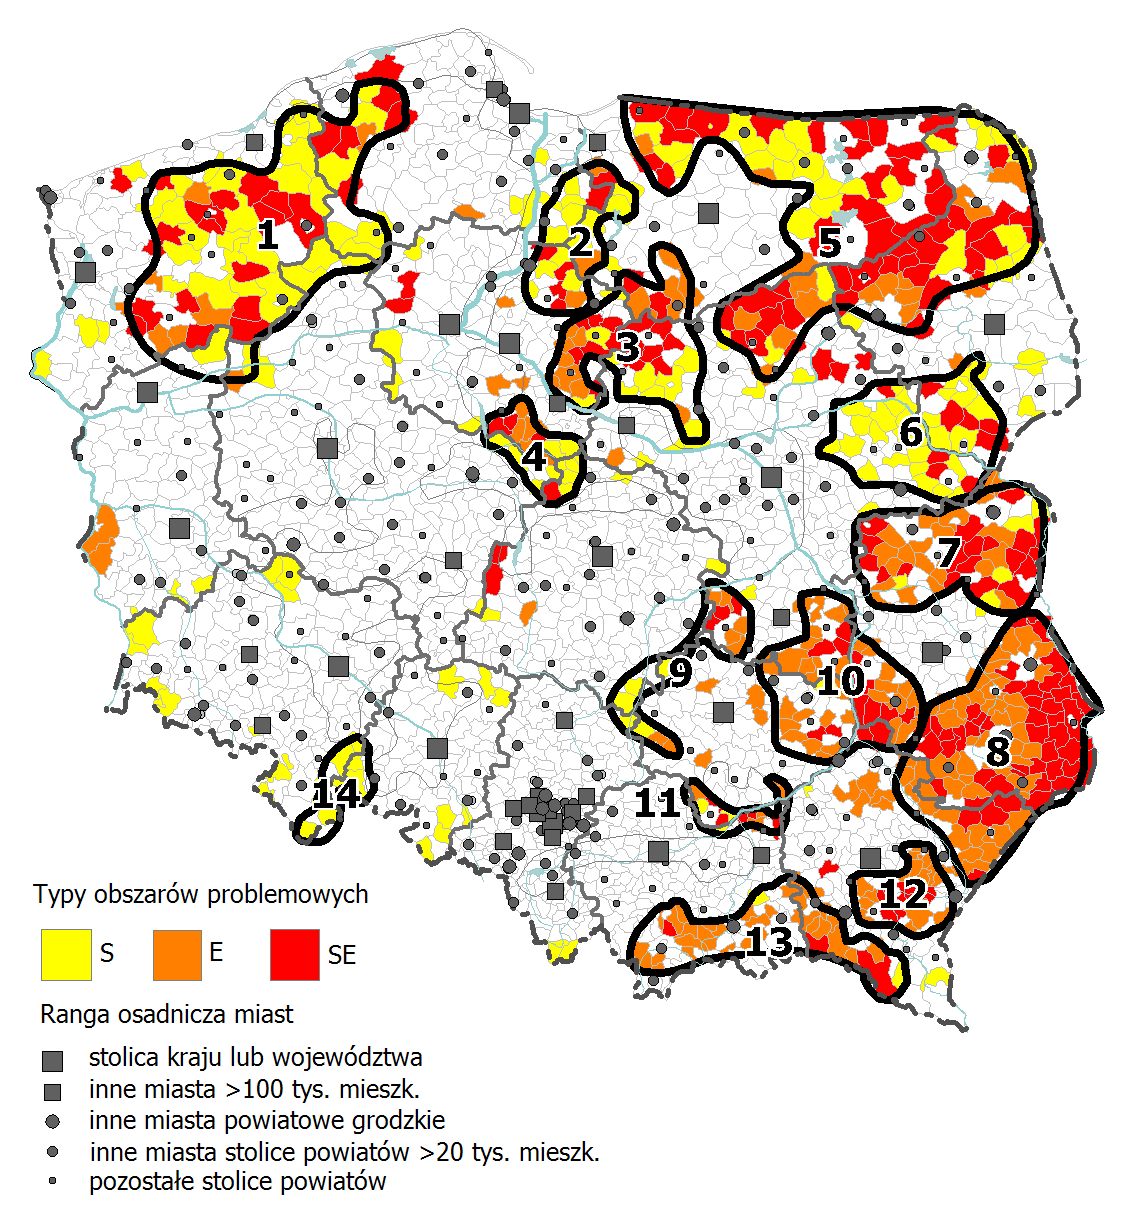 Obszary zagrożone trwałą marginalizacją w województwie małopolskim Skupiska gmin o wysokim natężeniu niekorzystnych zjawisk społecznoekonomicznych (położone głównie w północno-wschodniej, południowej